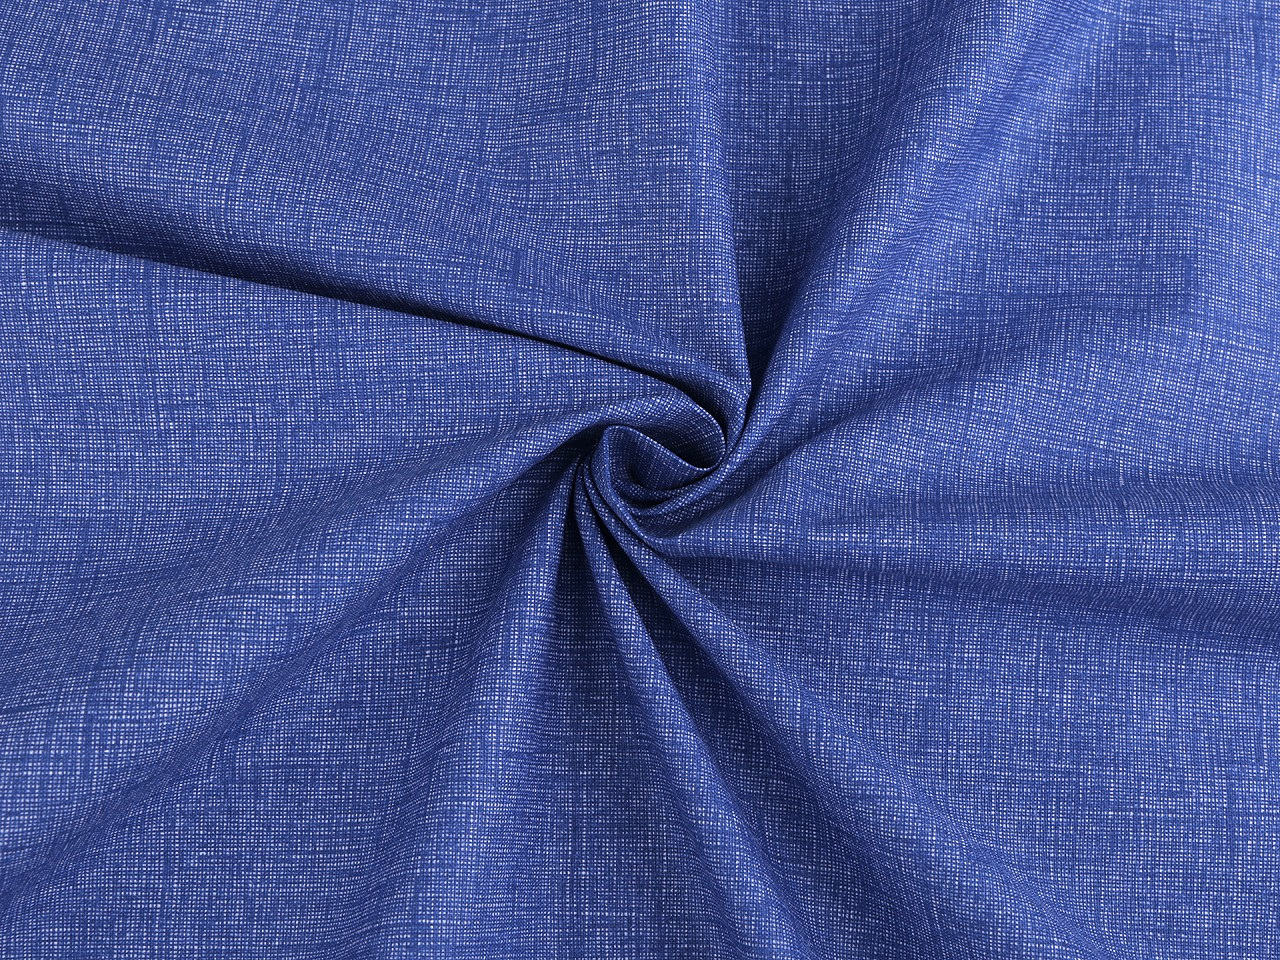 Bavlněná látka / plátno jednobarevná žíhaná, barva 11 (18) modrá safírová